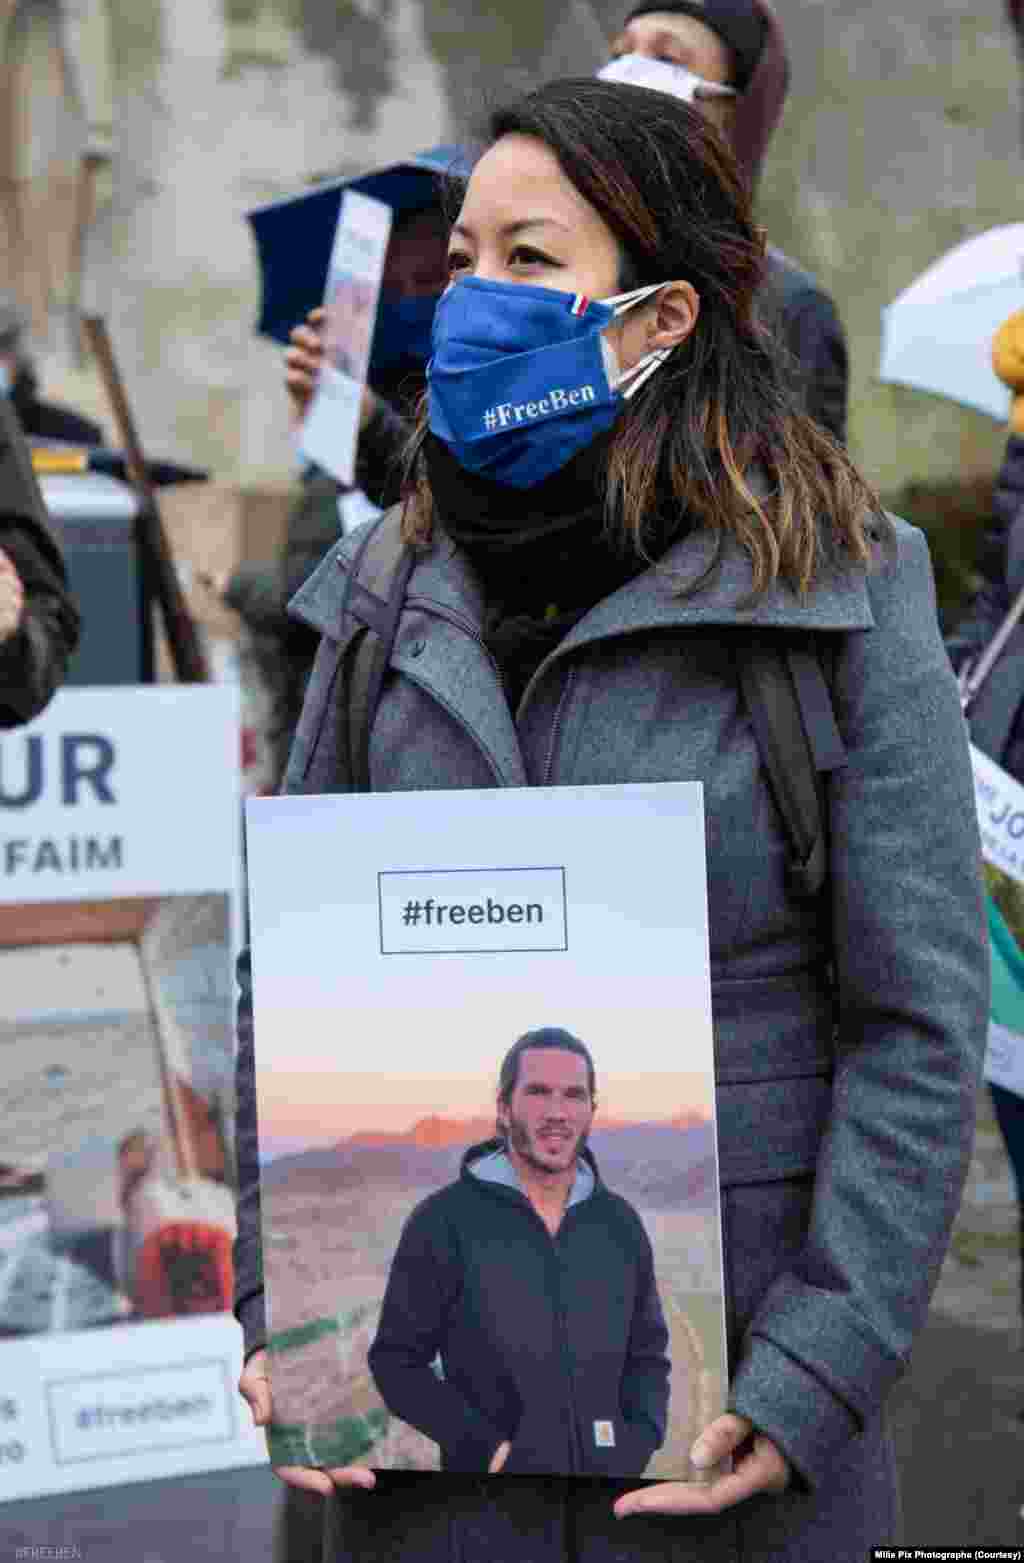 تجمع در میدان تروکادرو در پاریس و درخواست برای آزادی بنجامین بریر، گردشگر فرانسوی که در ایران به اتهام جاسوسی به زندان افتاده است